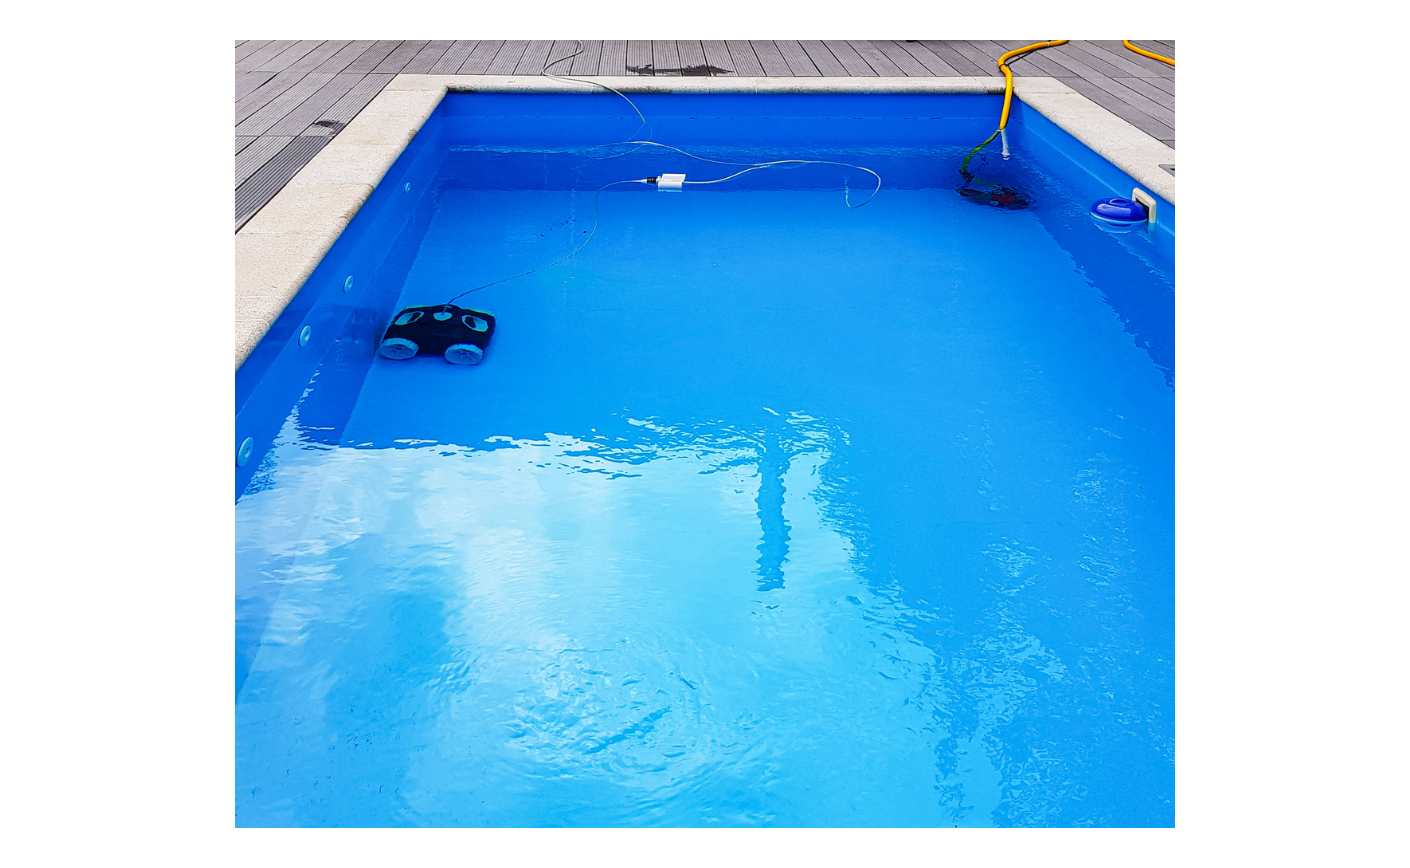 ¿Quieres limpiar tu piscina más eficazmente? Prueba con un robot limpiafondos